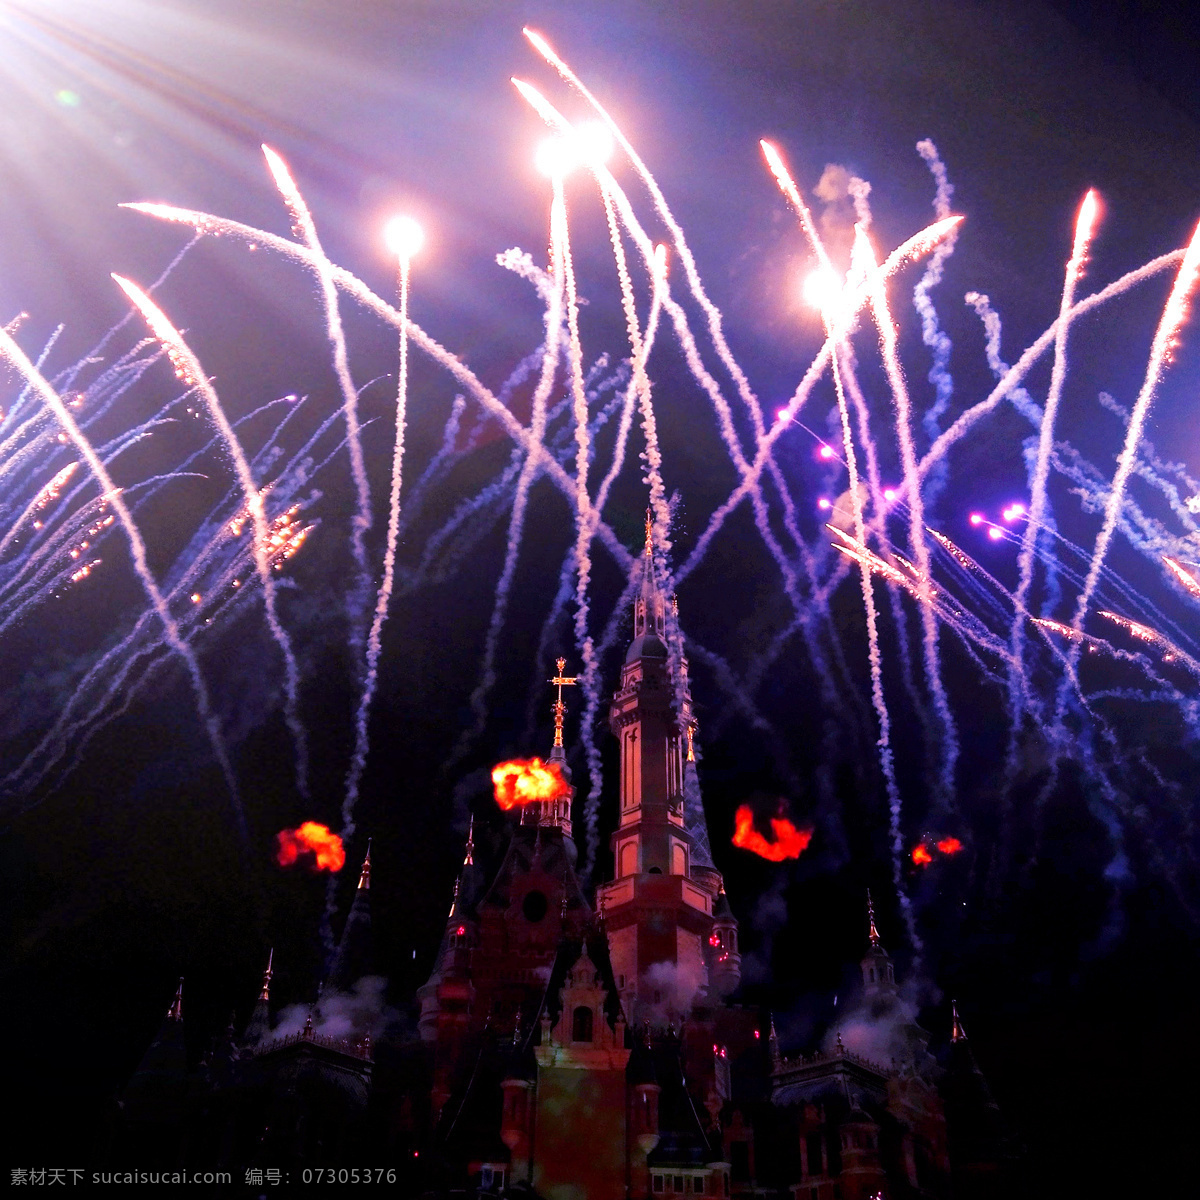 上海 迪士尼 音乐 烟火 秀 迪士尼乐园 迪斯尼 城堡 焰火 夜景 表演 旅游摄影 国内旅游